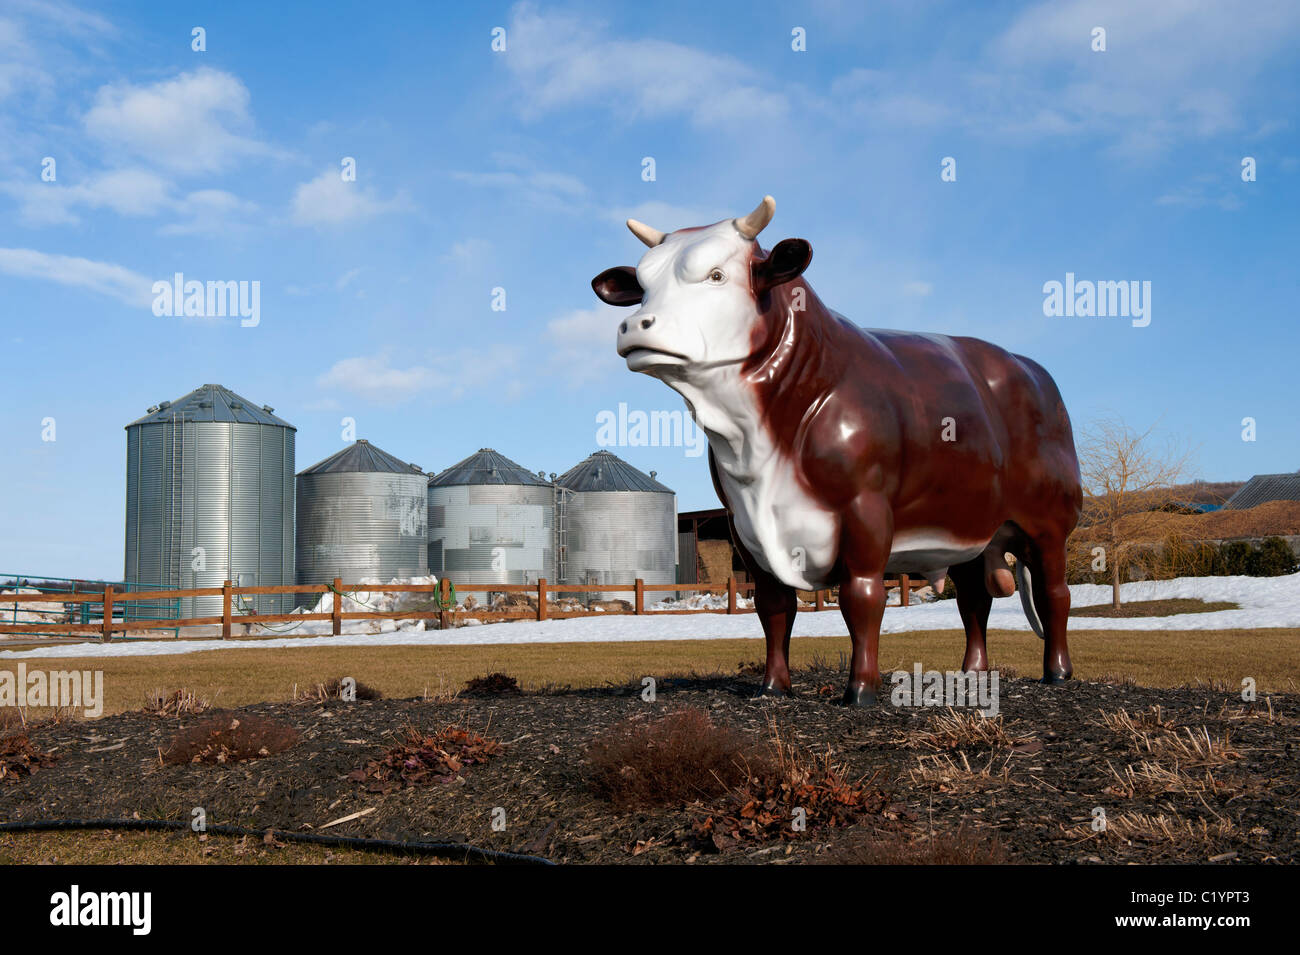 Fake vita dimensioni bull sui motivi di un allevamento di bestiame agriturismo vicino a St-Augustin, provincia del Québec in Canada. Foto Stock